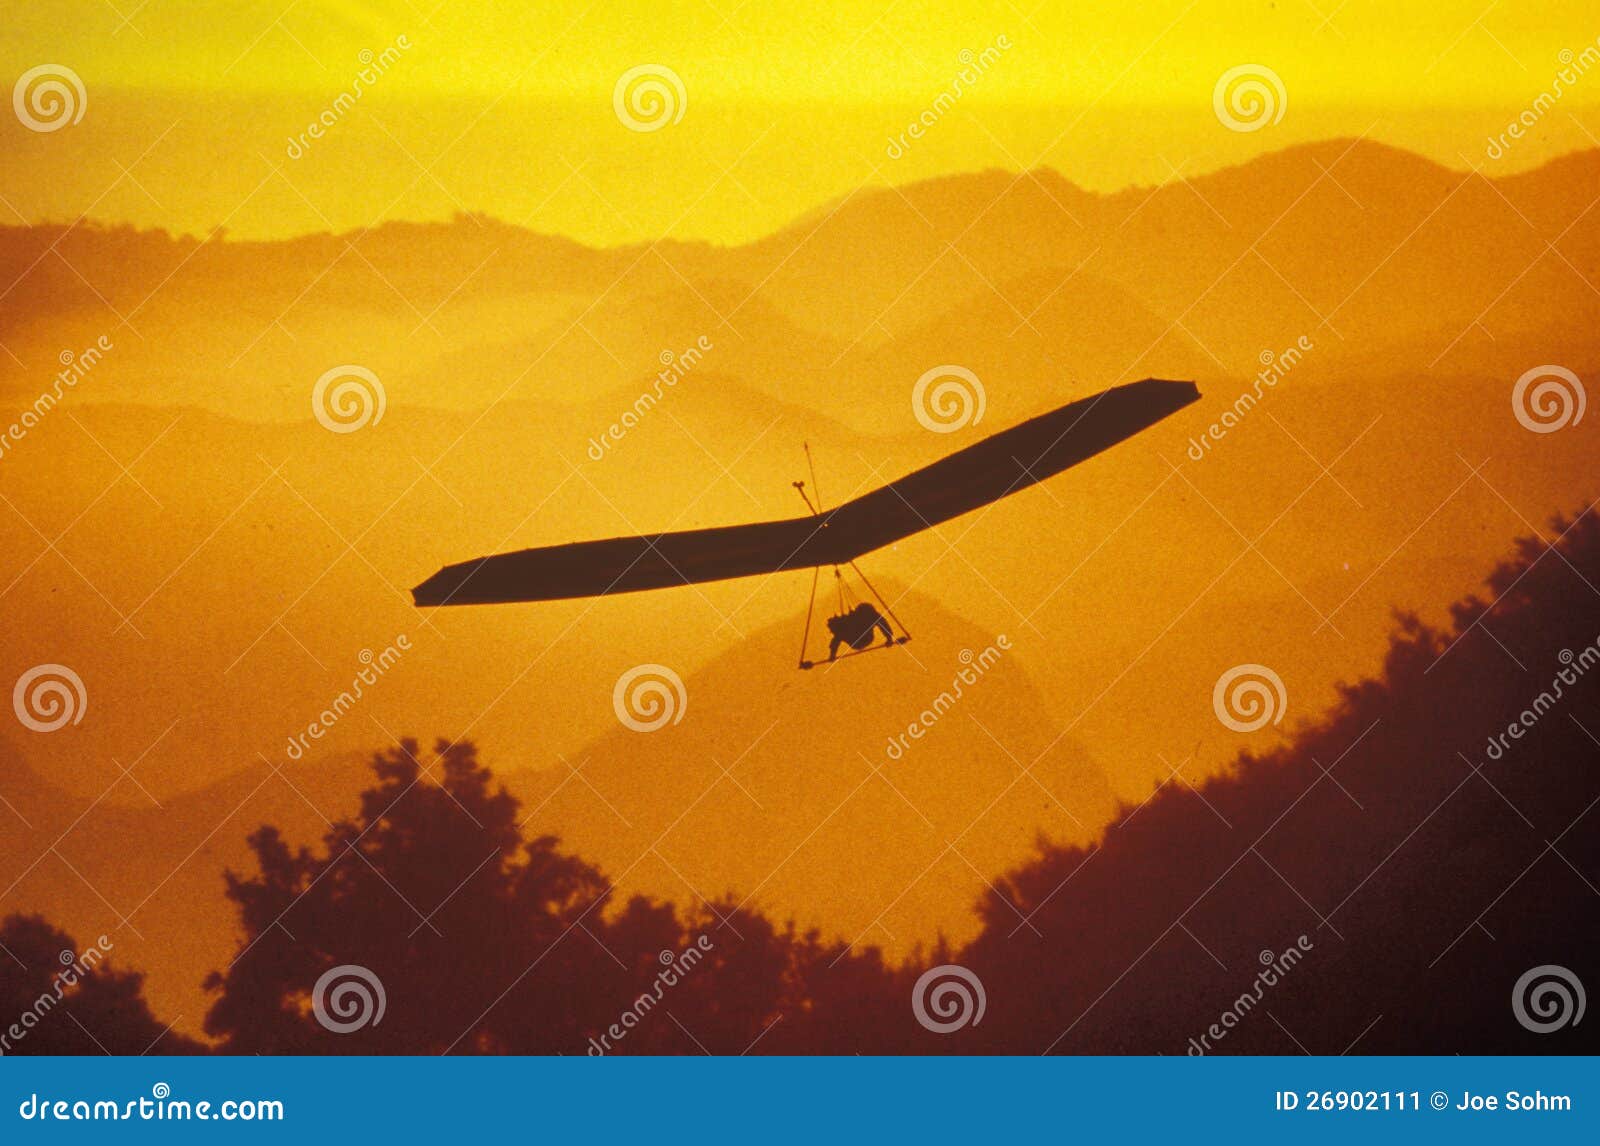 solar sailing hang gliding